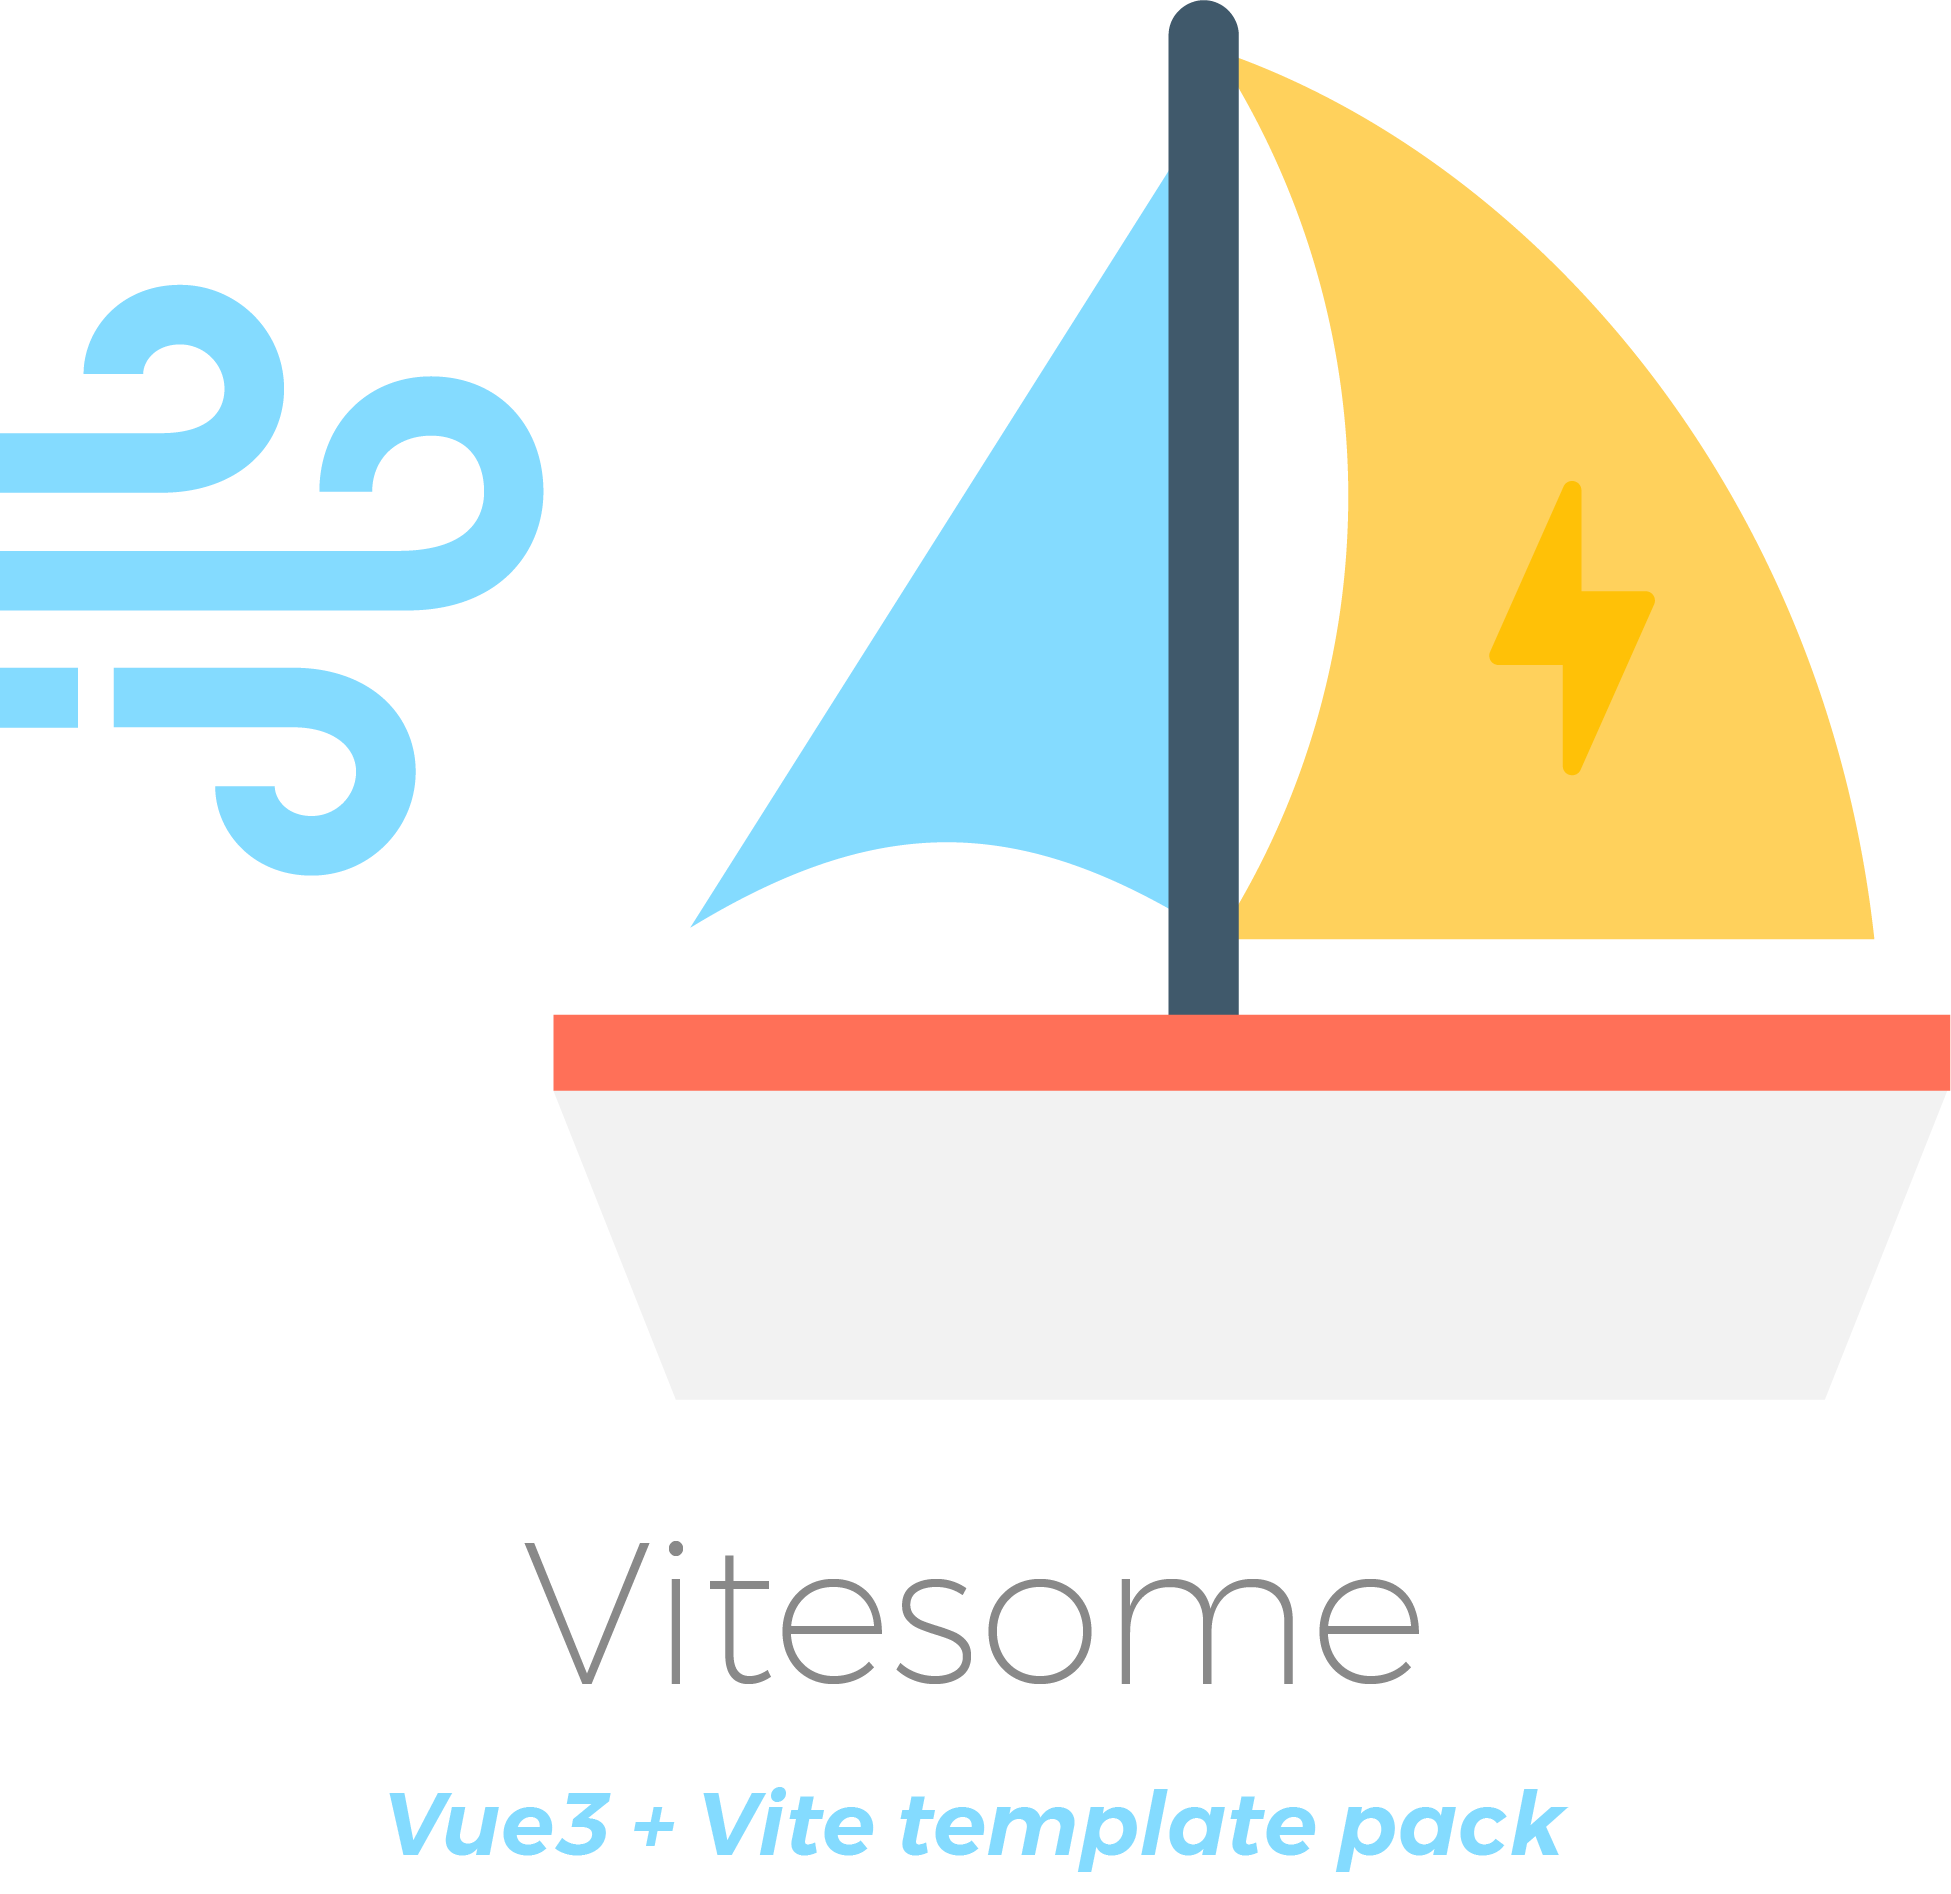 Vitesome - Vue3 + Vite template starter